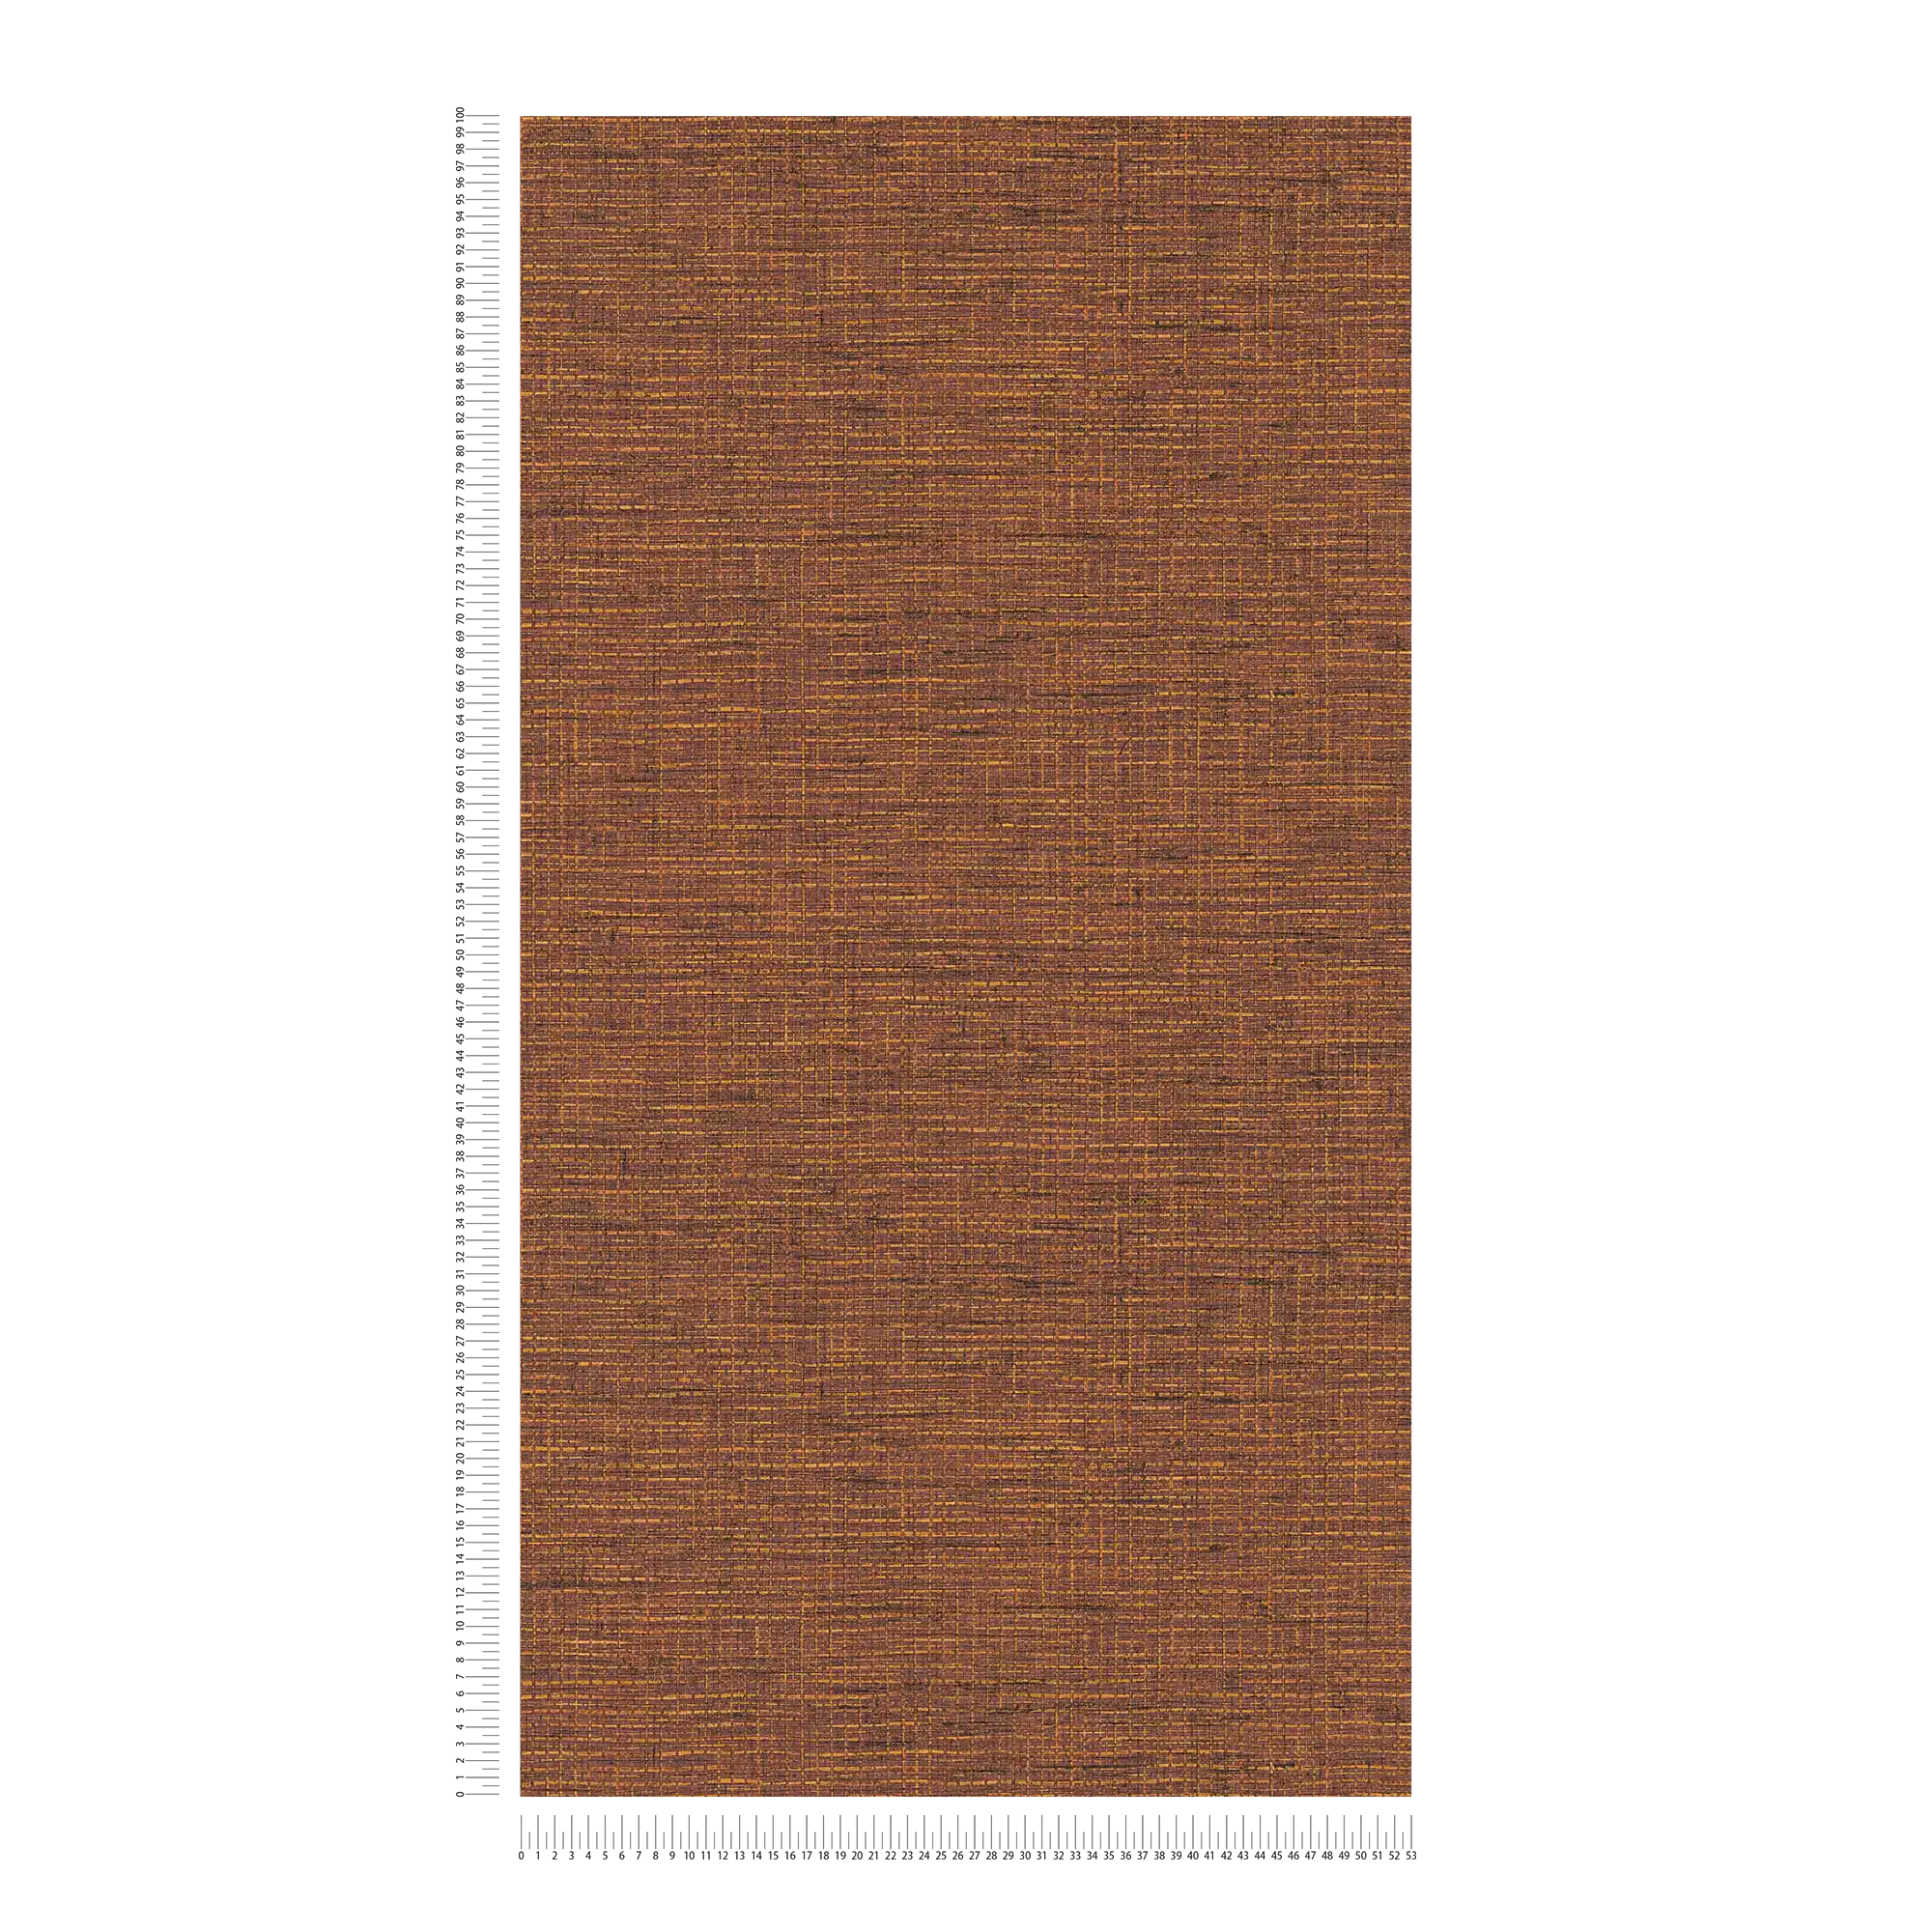             Papier peint ethnique orange-marron avec aspect tissé raphia
        